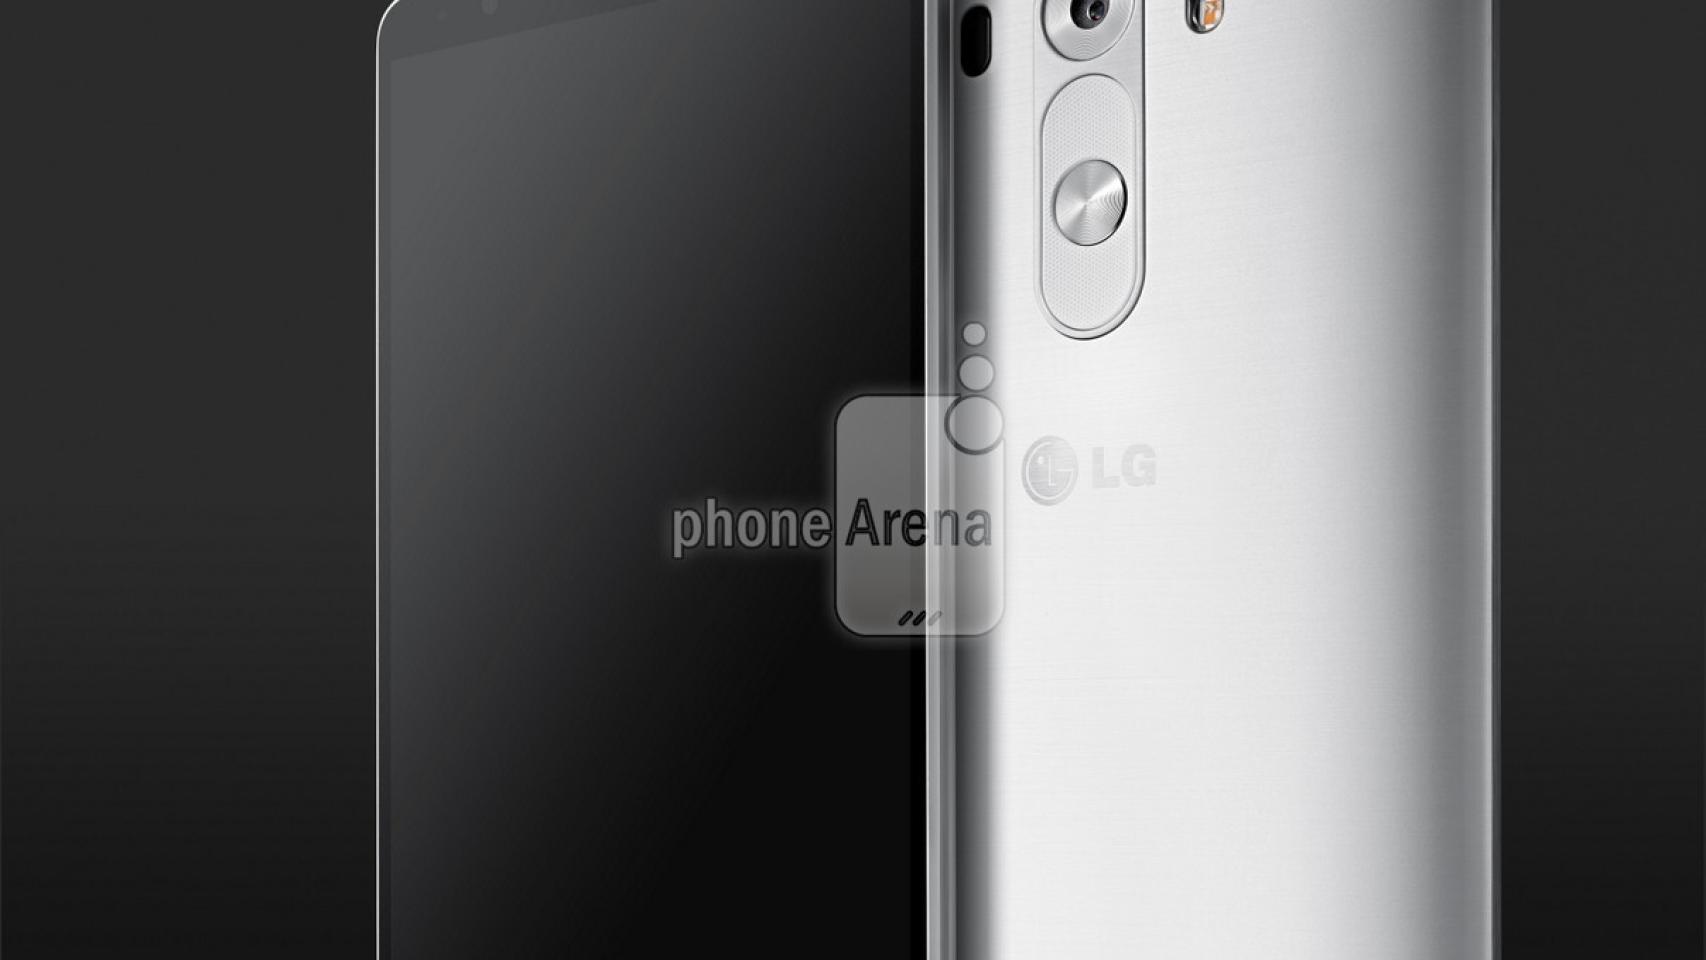 LG G3 se luce en sus primeras imágenes oficiales filtradas